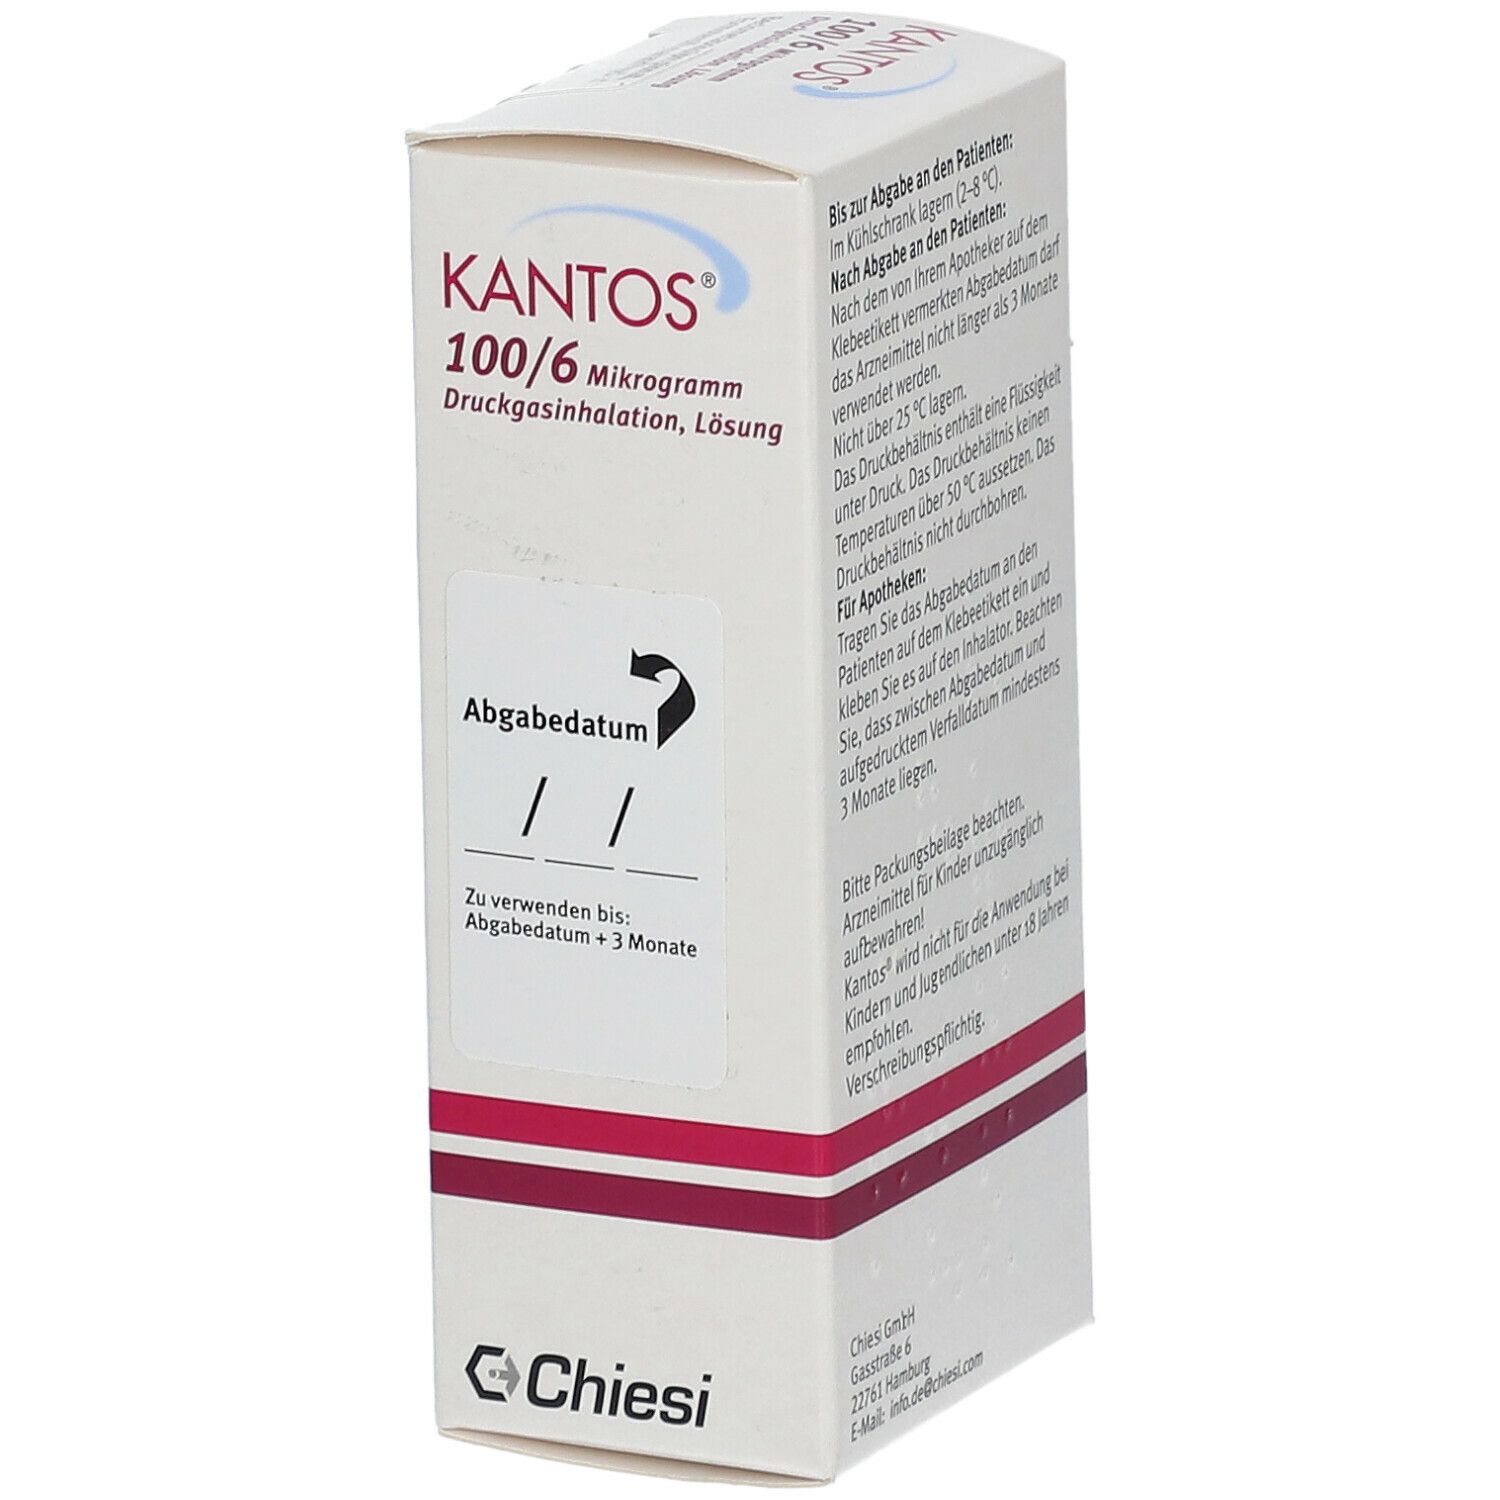 KANTOS® 100 µg/6 µg